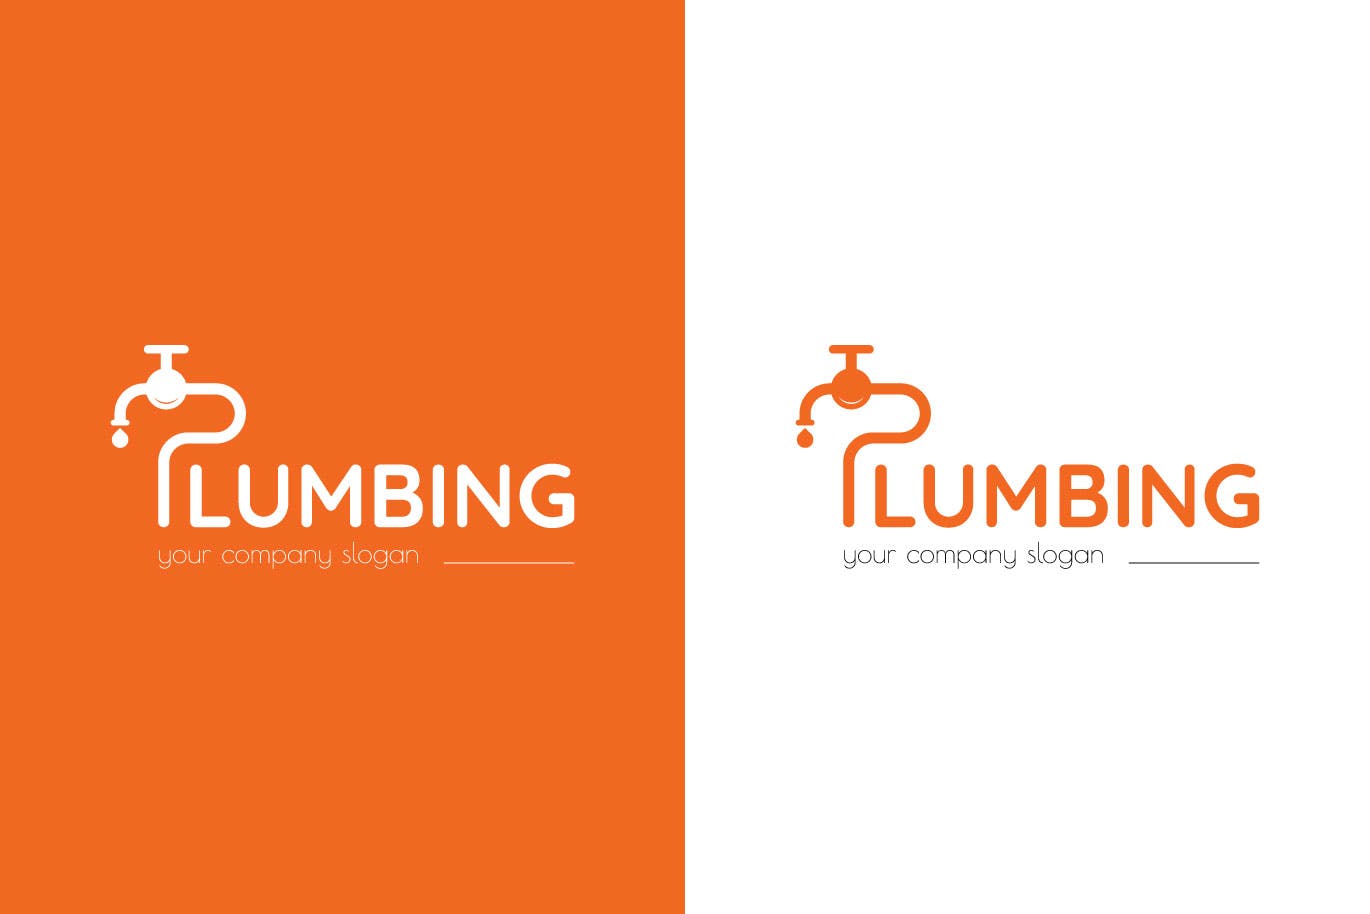 字母P图形供水设施品牌Logo设计16图库精选模板 Plumbing Business Logo Template插图(1)